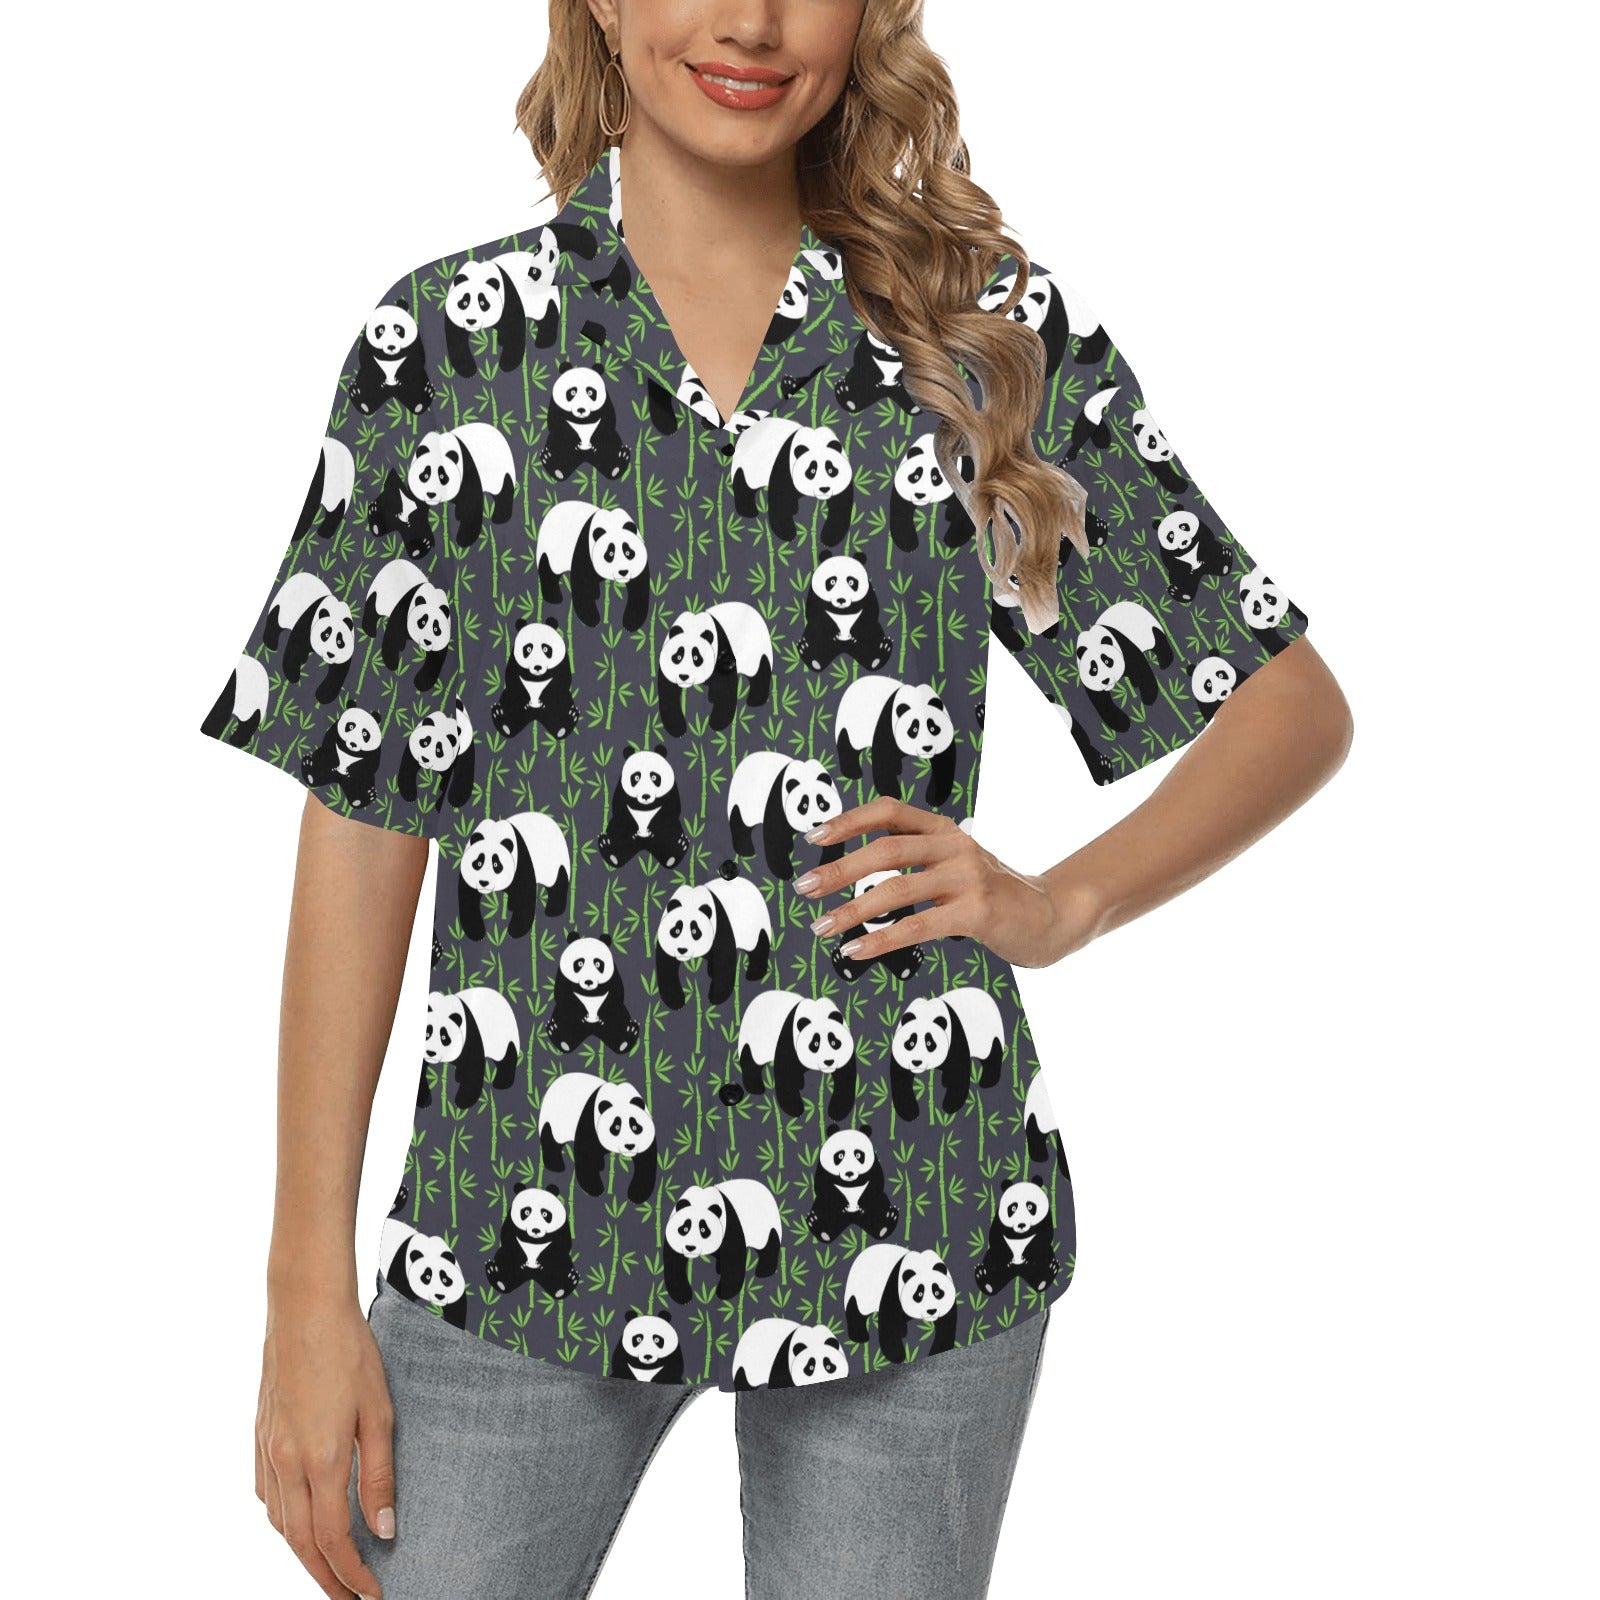 Panda Bear Bamboo Themed Print Women's Hawaiian Shirt